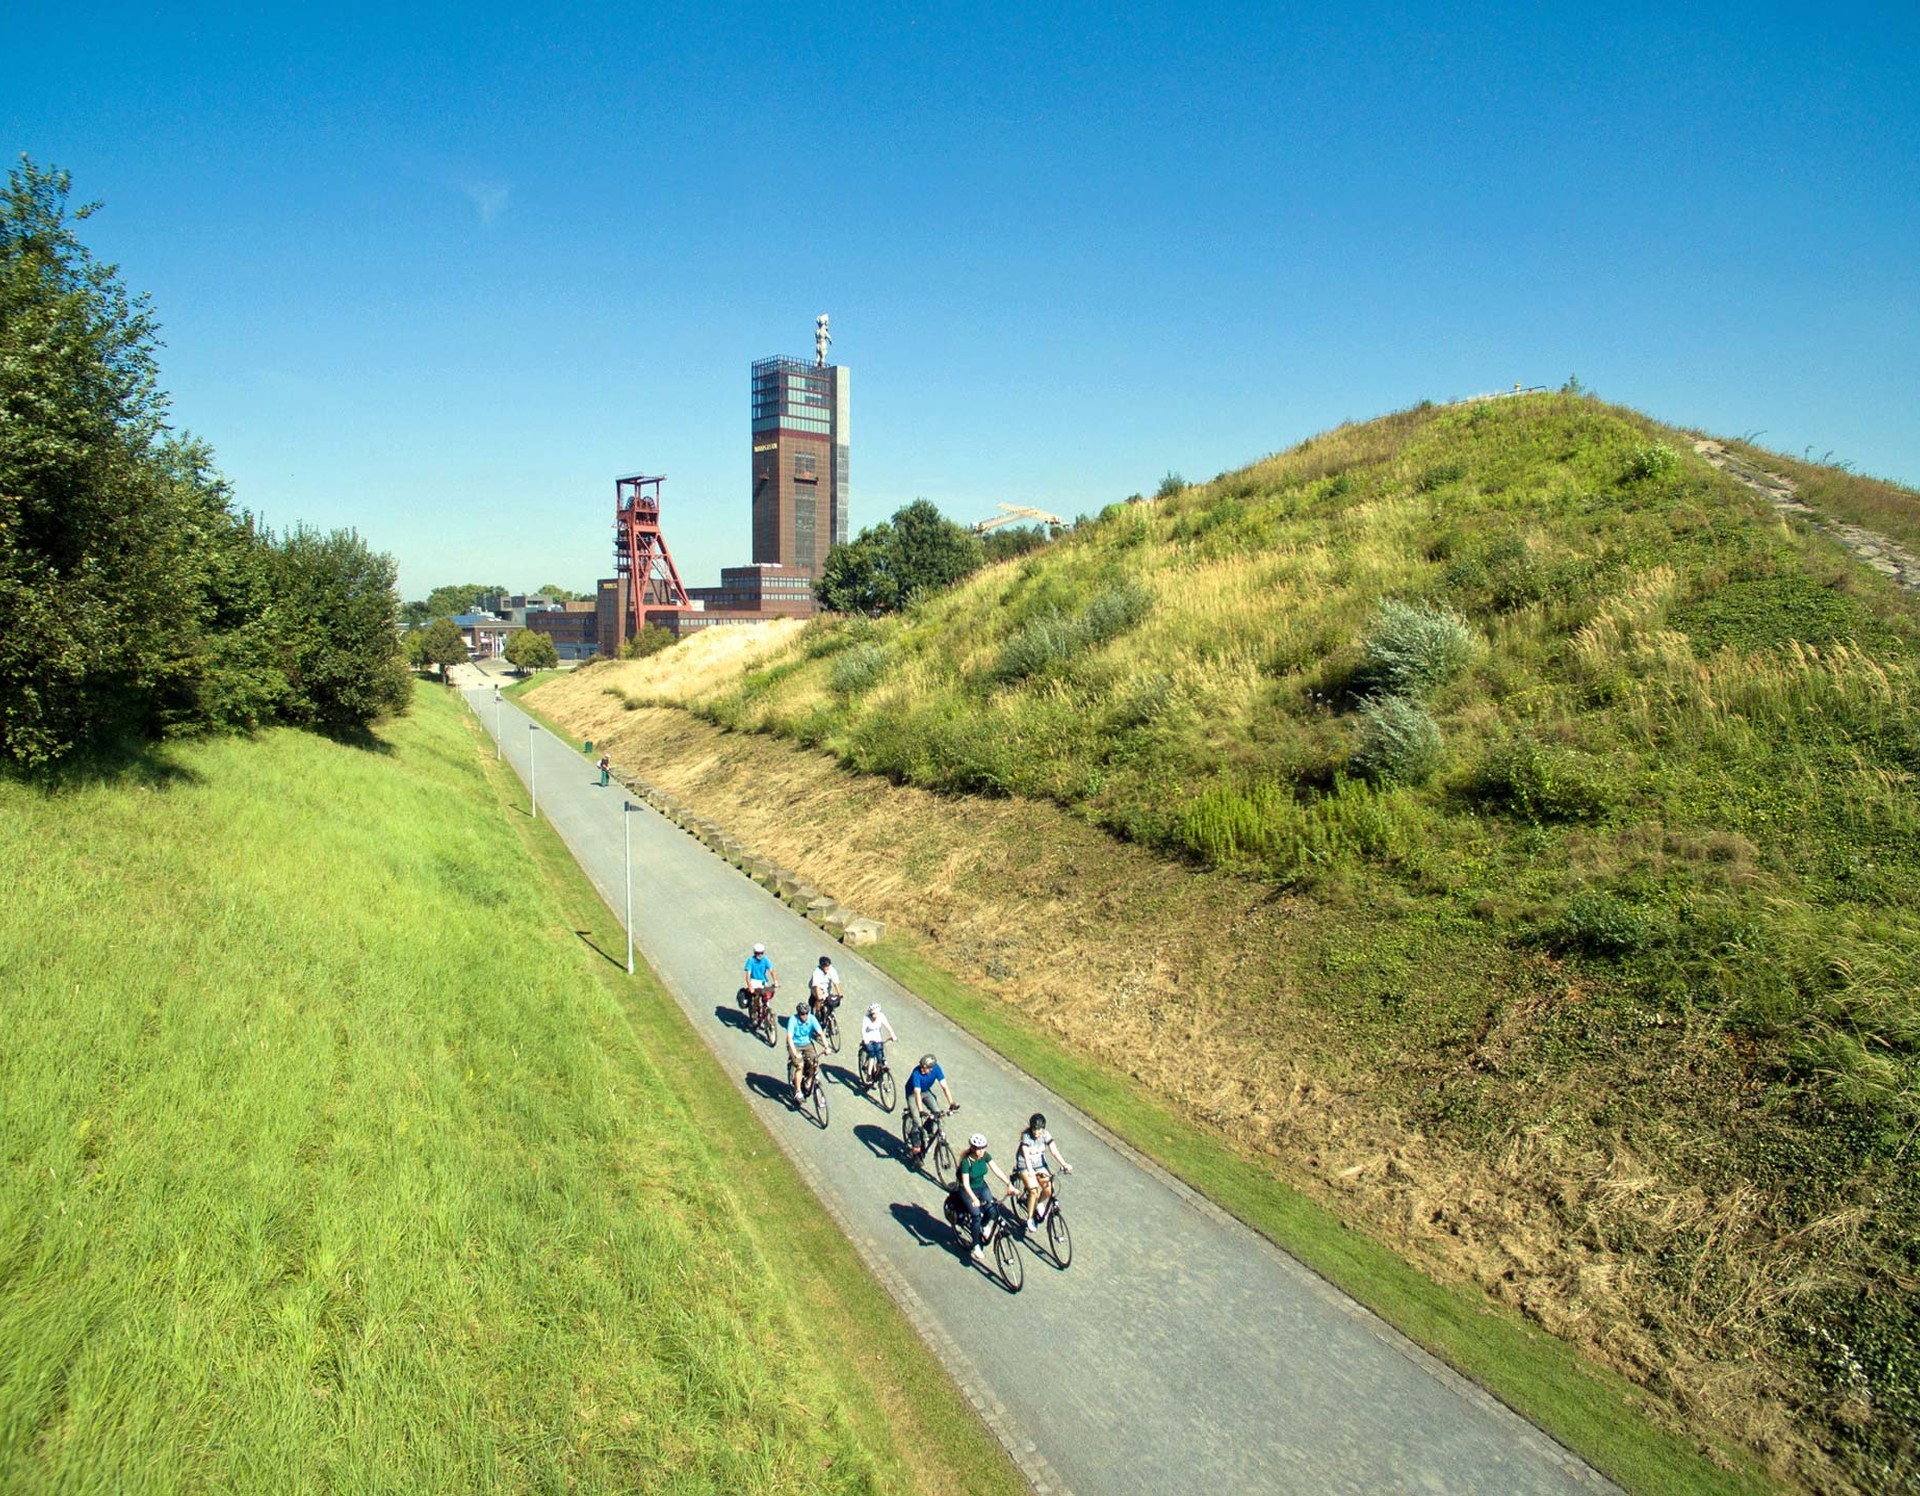 Unterhalb der Aussichtsplattform auf der Halde führt ein Weg entlang. Auf diesem befindet sich eine Gruppe Radfahrer.